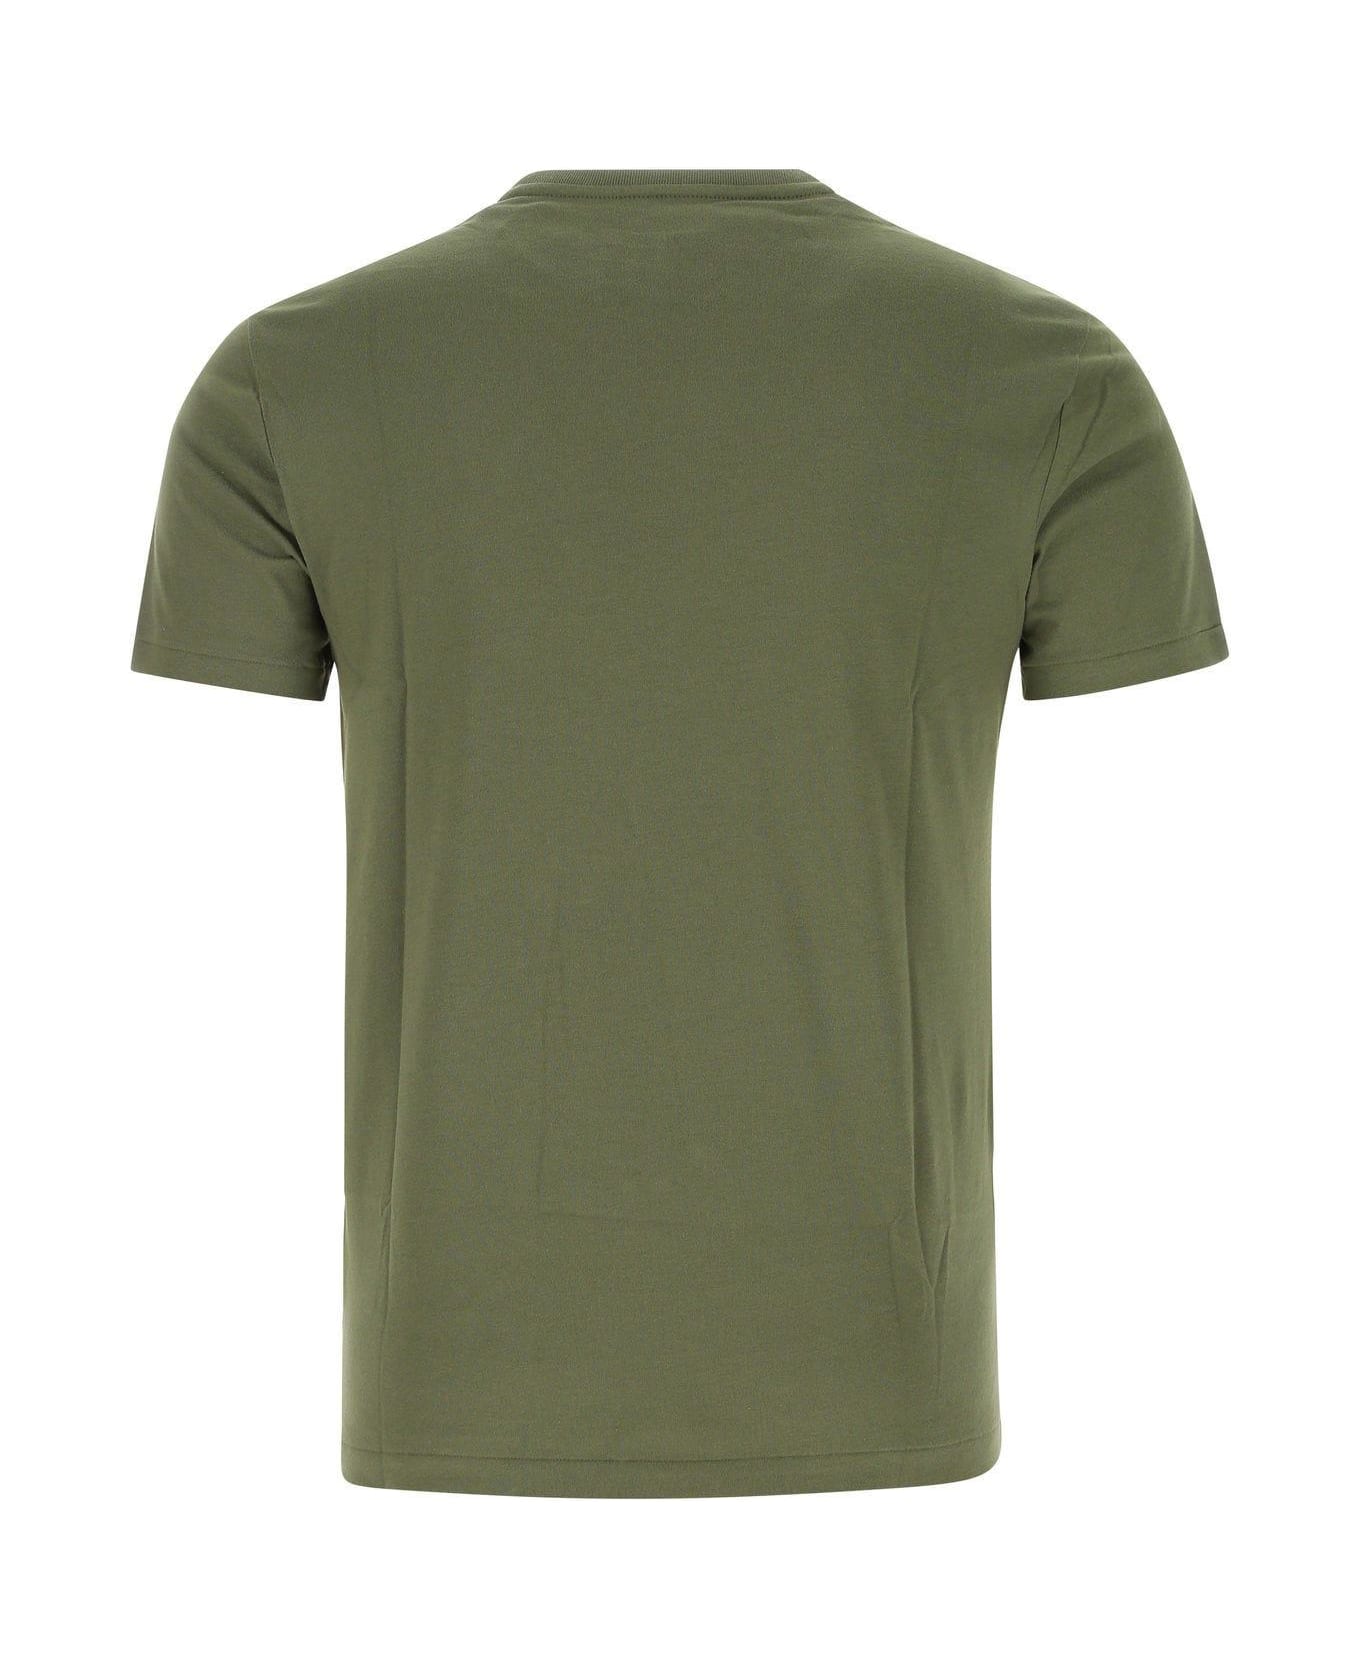 Polo Ralph Lauren Military Green Cotton T-shirt Polo Ralph Lauren - 292